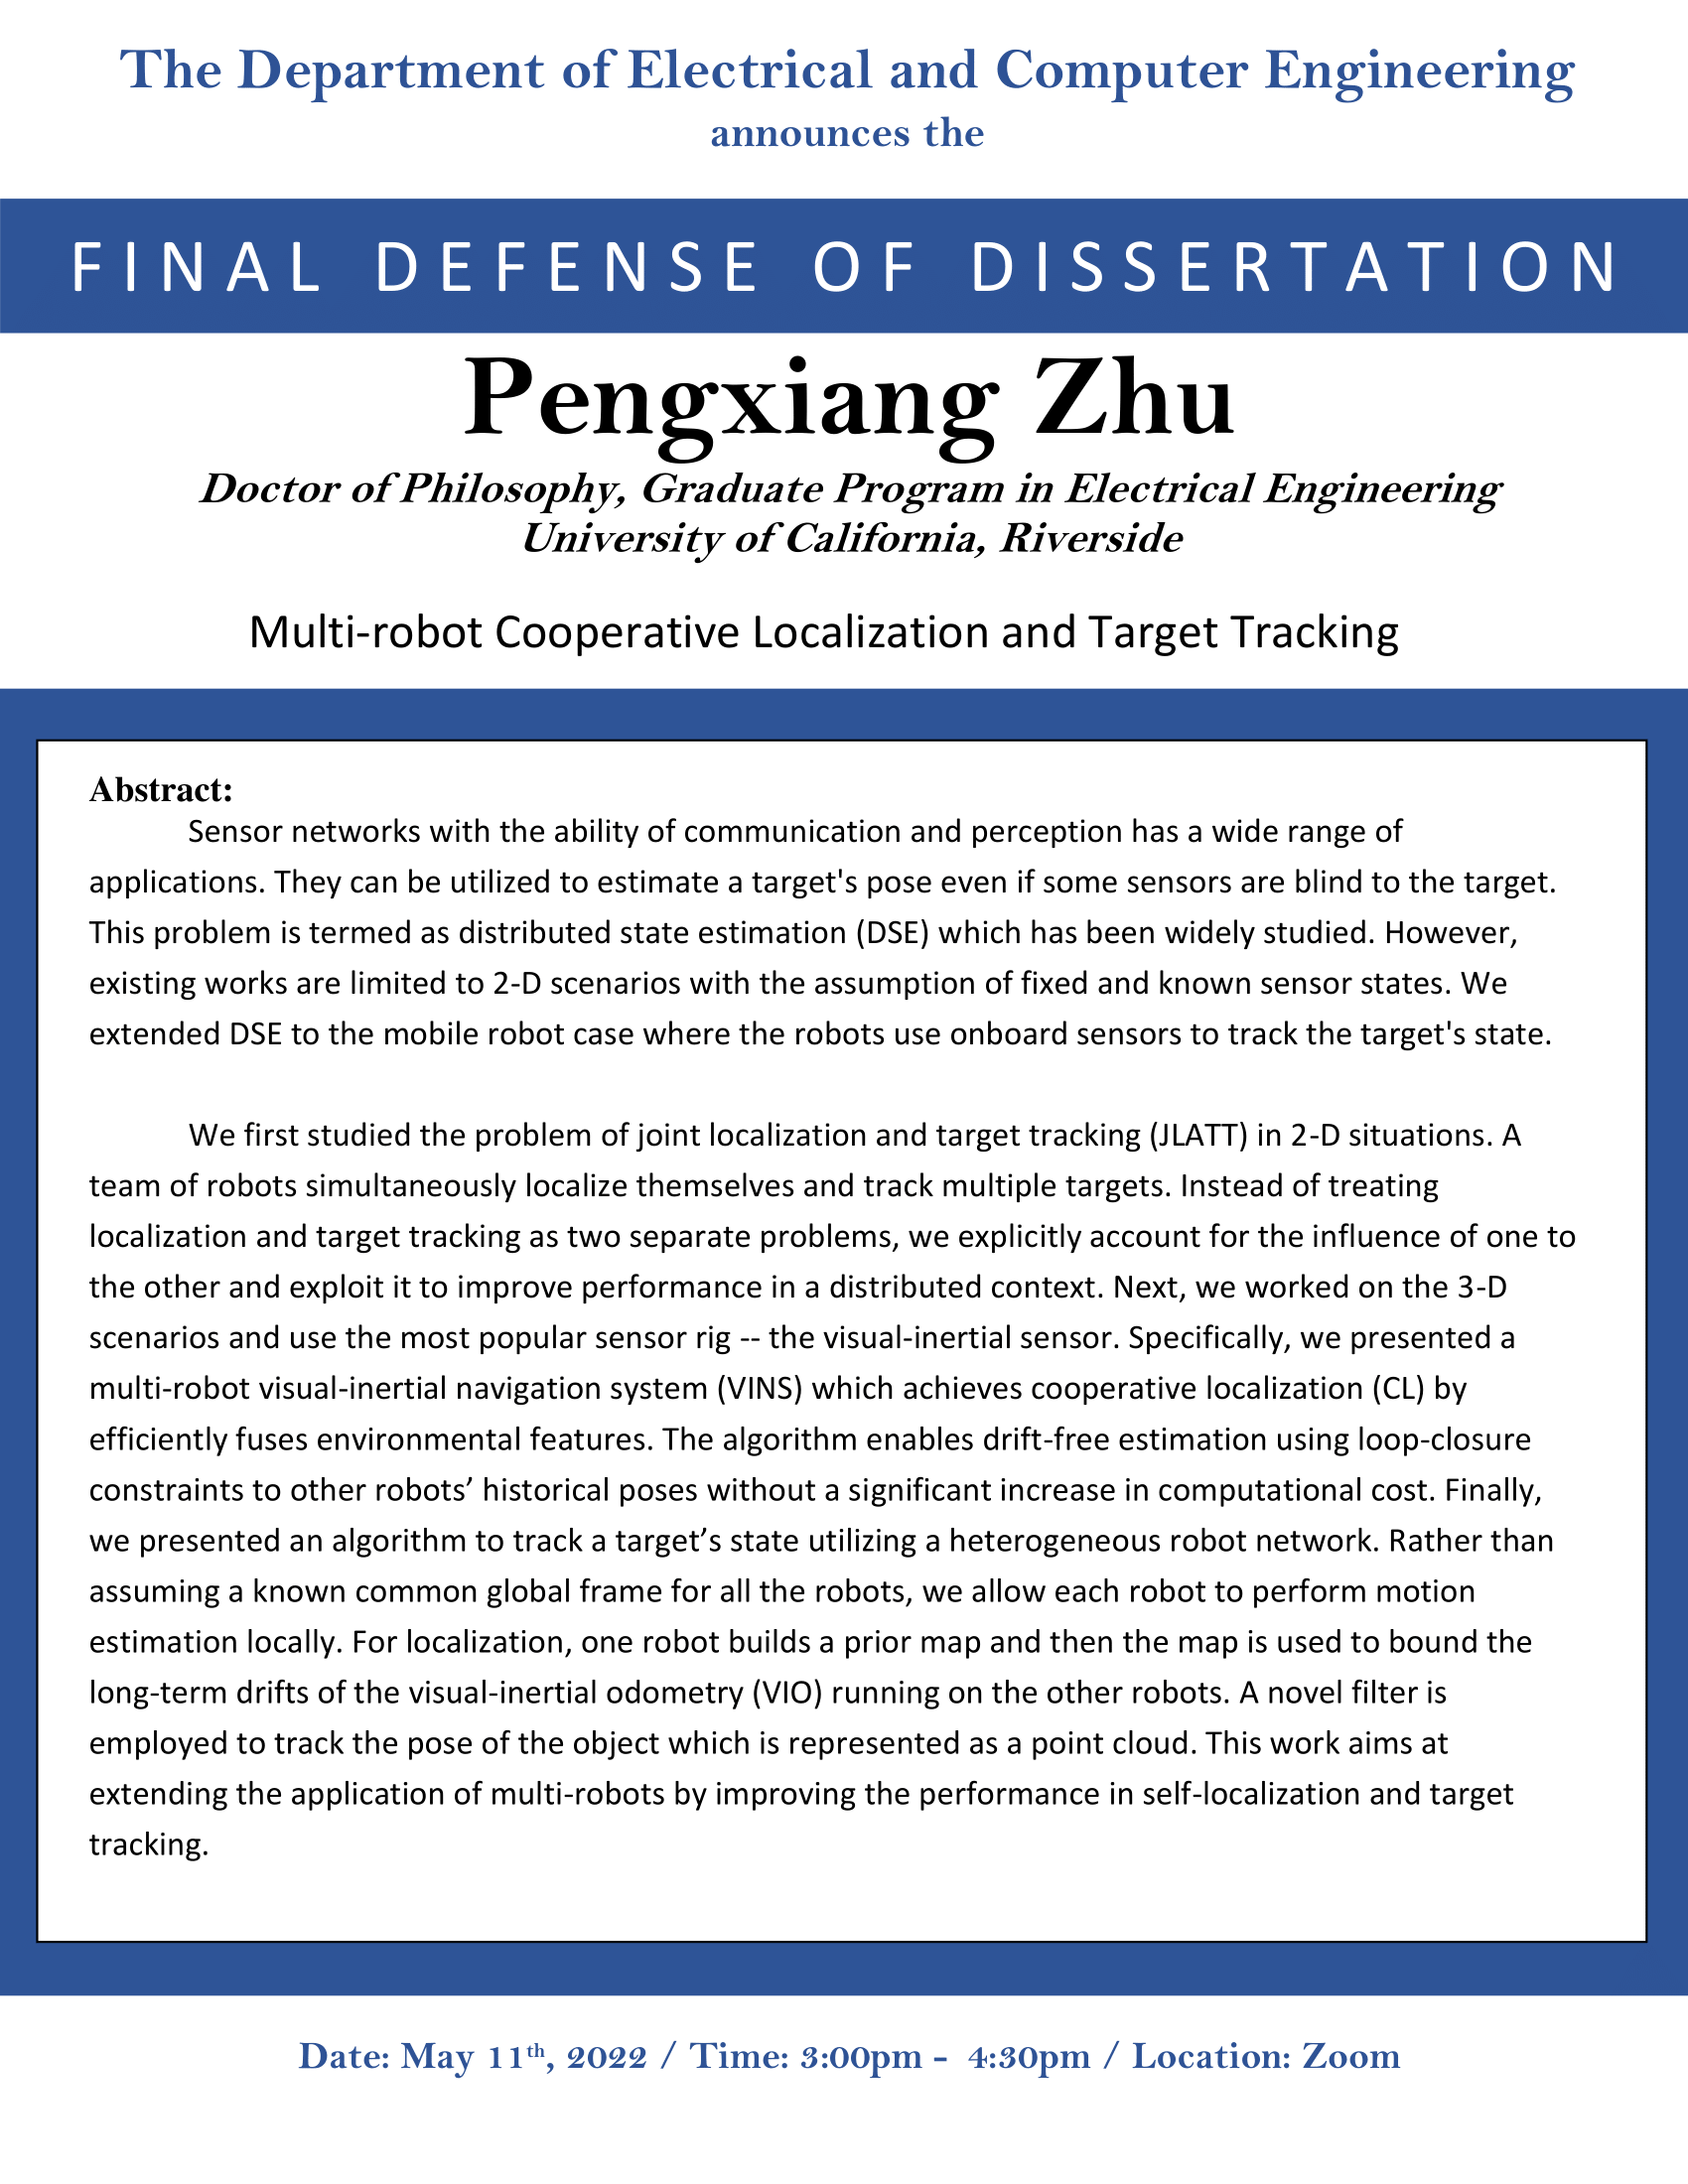 Zhu, Pengxiang Dissertation Flyer